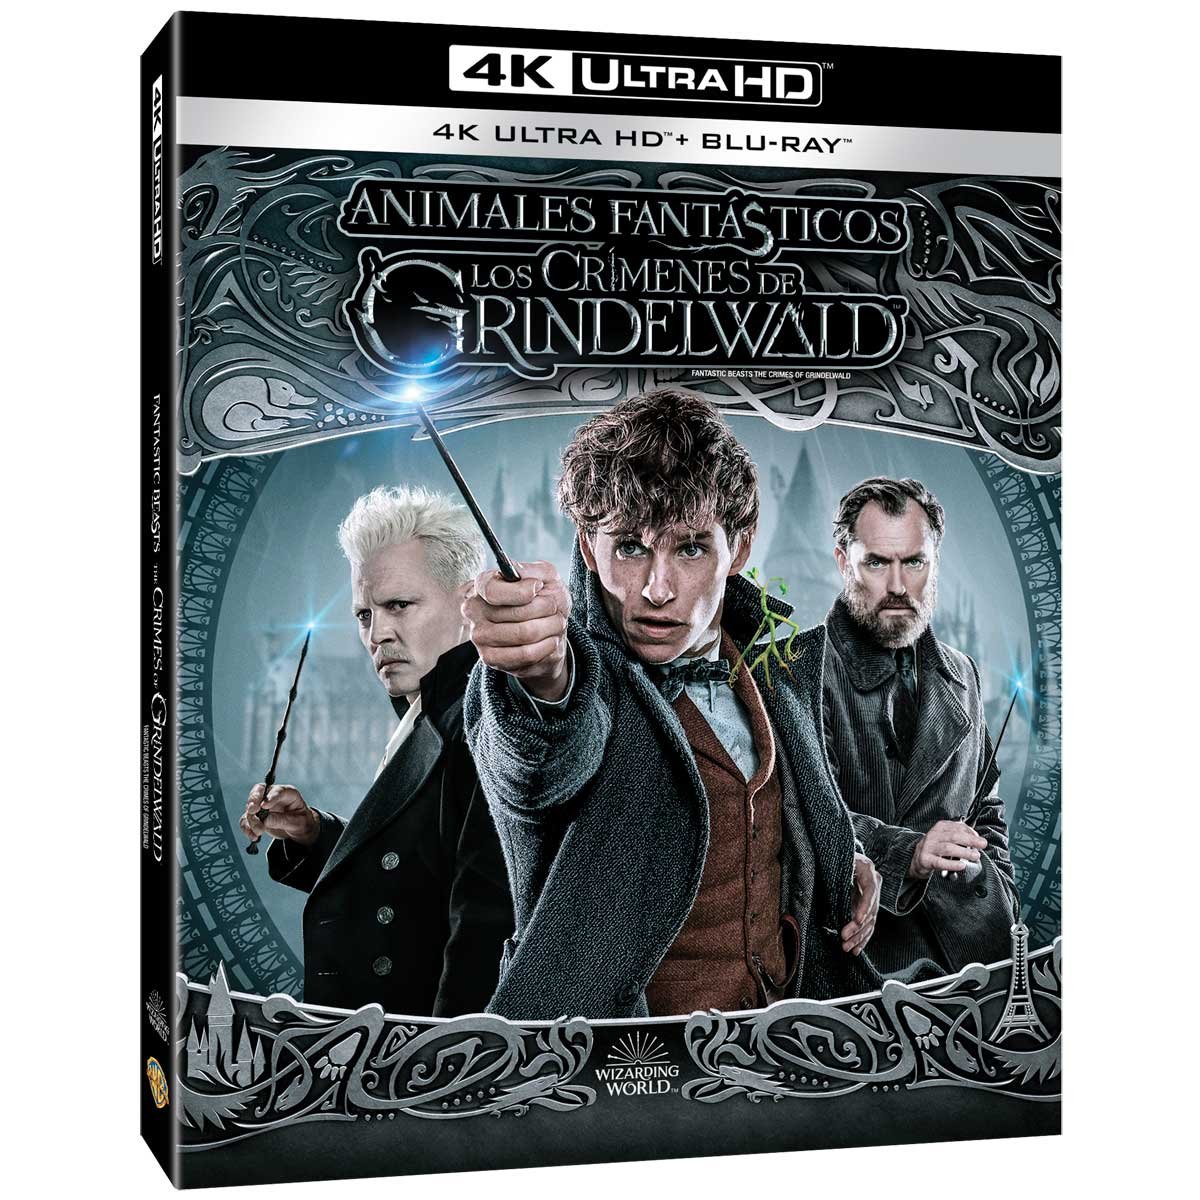 4K Uhd + Blu Ray Animales Fantasticos los Crimenes de Grindelwald